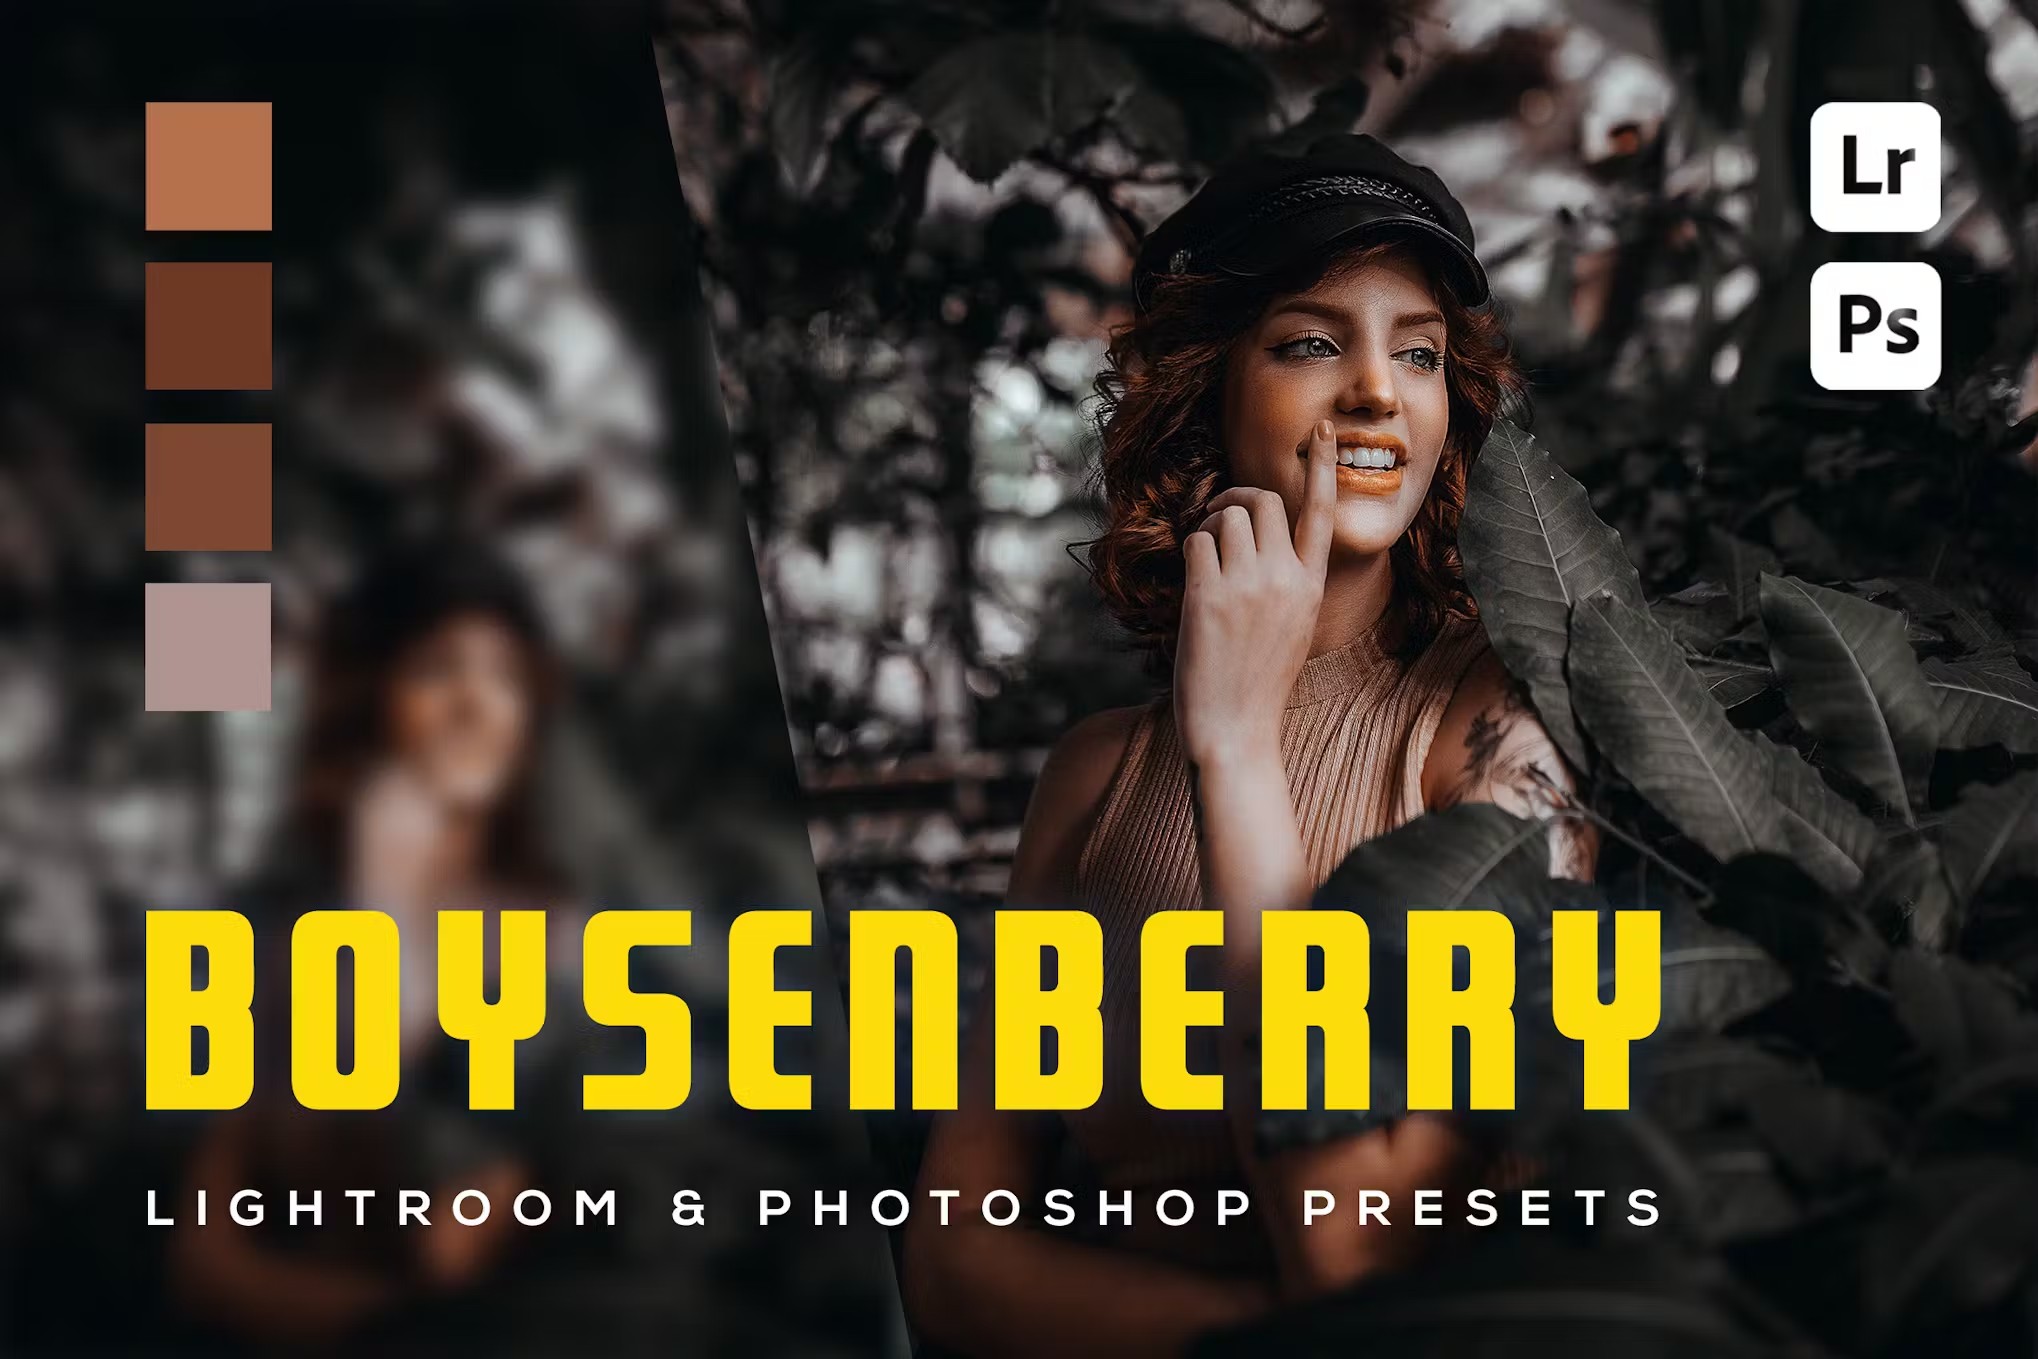 暗红黑色人像街拍摄影后期调色Lightroom预设 6 Boysenberry Lightroom- und Photoshop-Voreinstellungen 插件预设 第1张